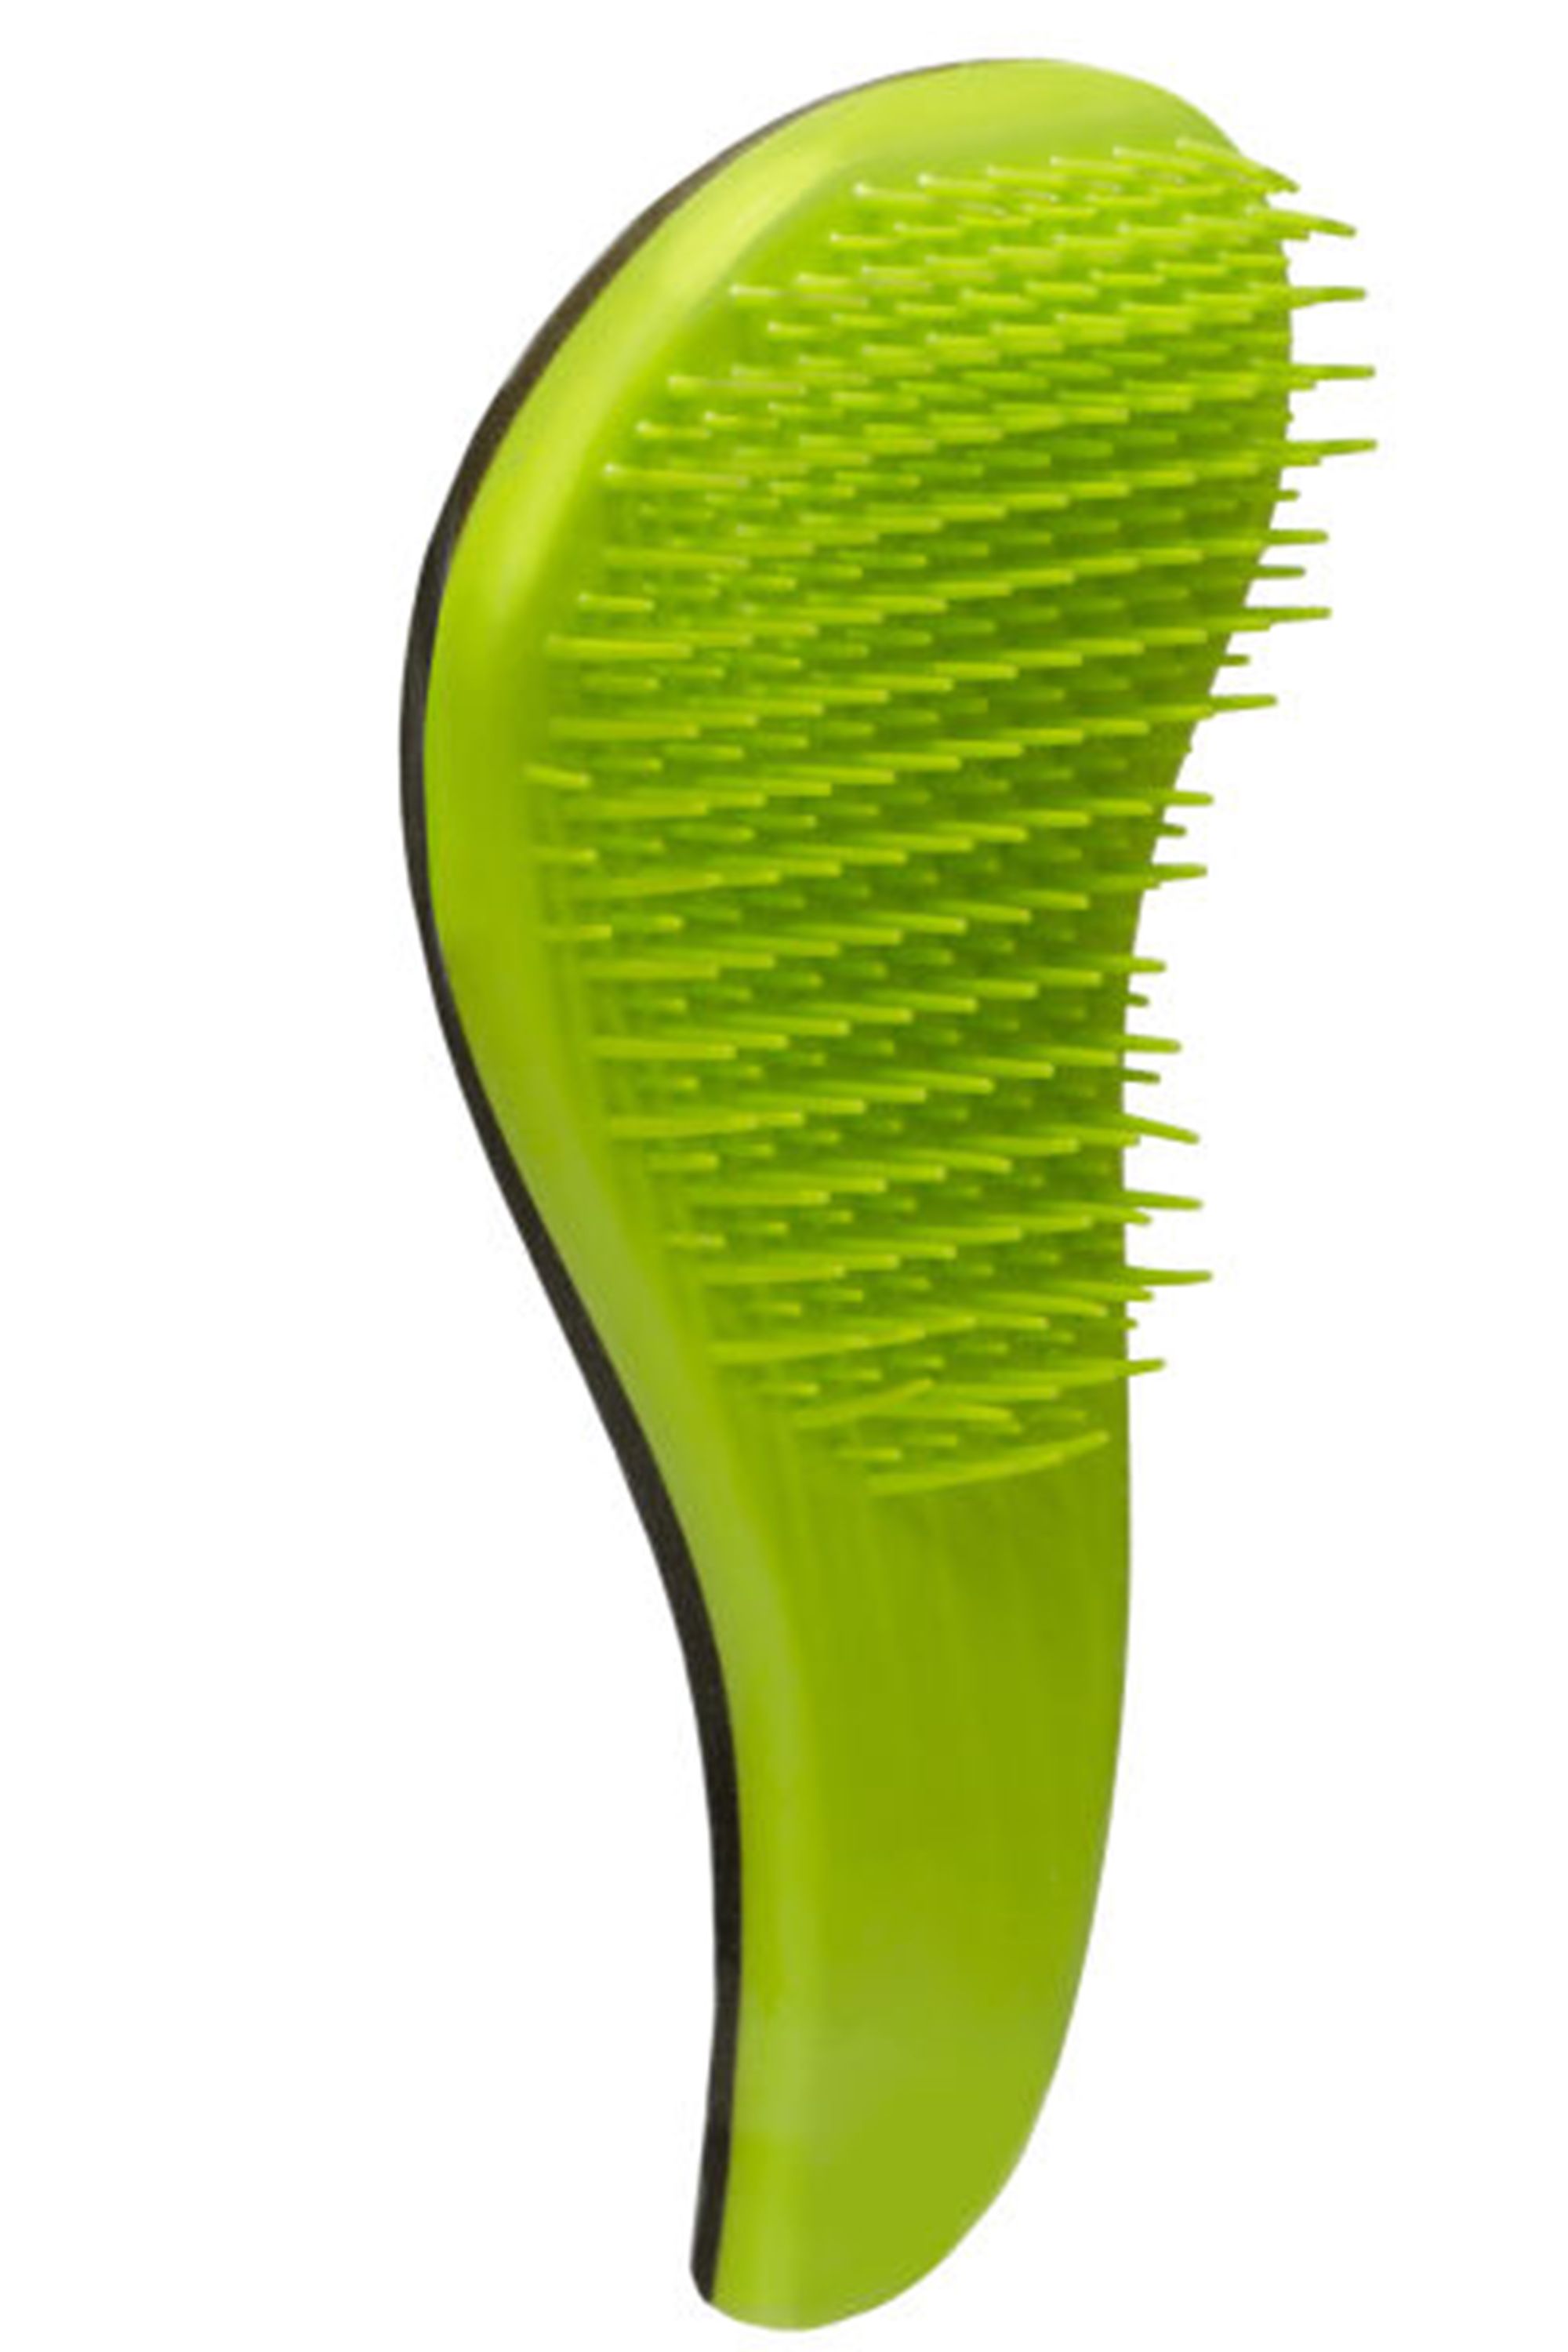 Scalpmaster Detangling Cushioned Brush Detangle Brush Hair Brush Black 1  Pc. - CÔNG TY TNHH DỊCH VỤ BẢO VỆ THĂNG LONG SECOM